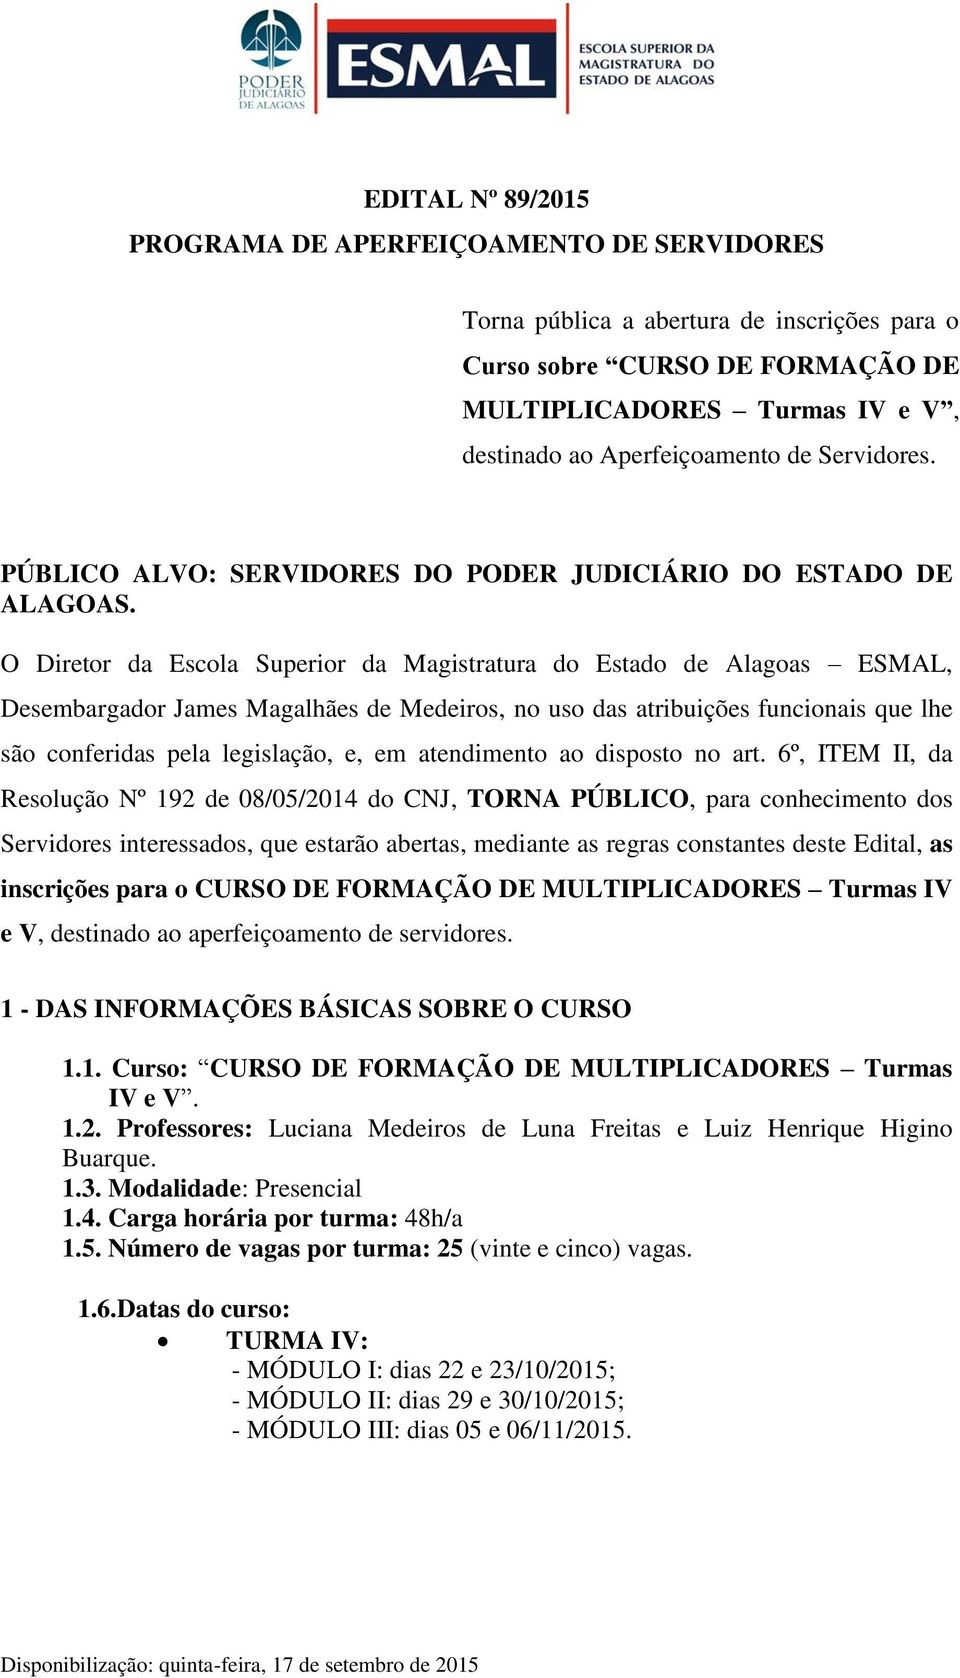 O Diretor da Escola Superior da Magistratura do Estado de Alagoas ESMAL, Desembargador James Magalhães de Medeiros, no uso das atribuições funcionais que lhe são conferidas pela legislação, e, em